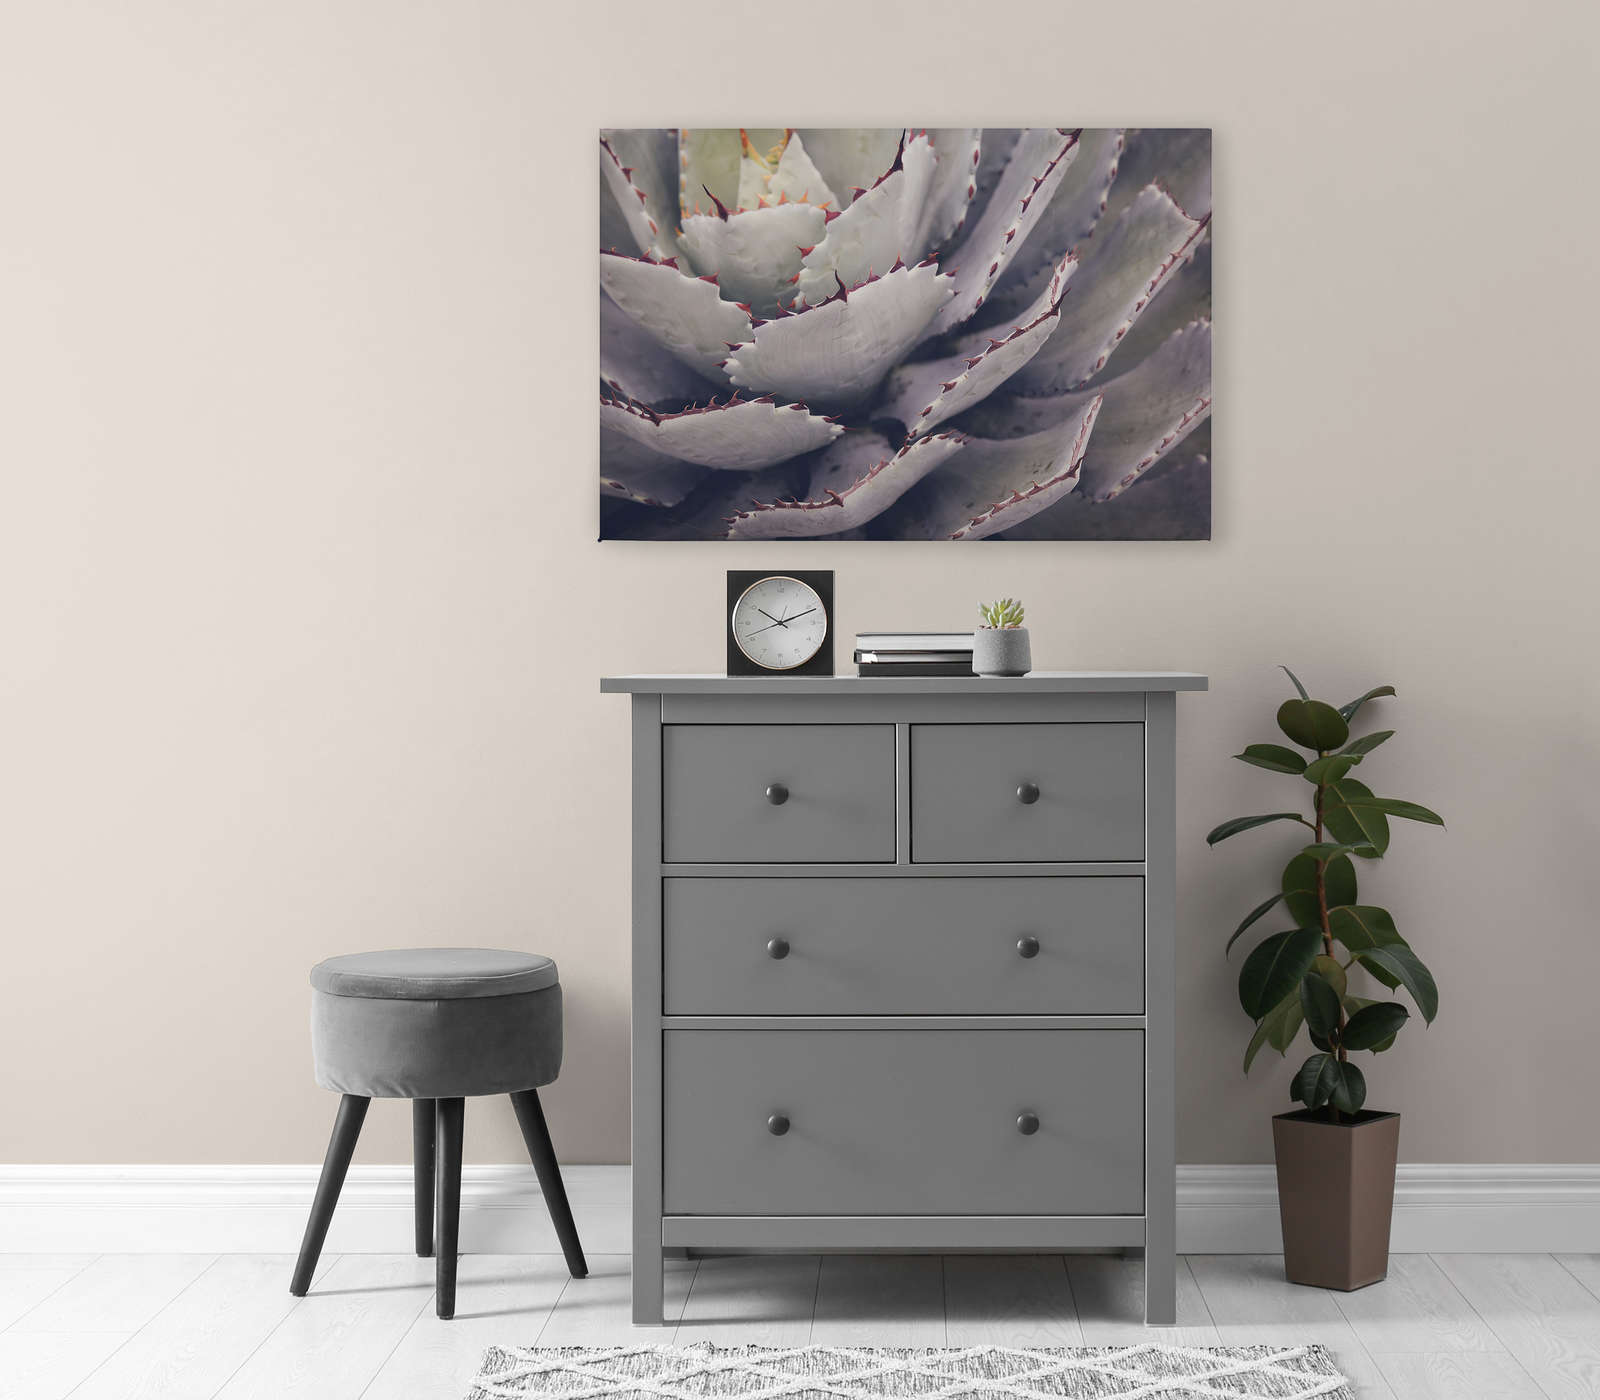             Cuadro en lienzo con primer plano de un cactus - 0,90 m x 0,60 m
        